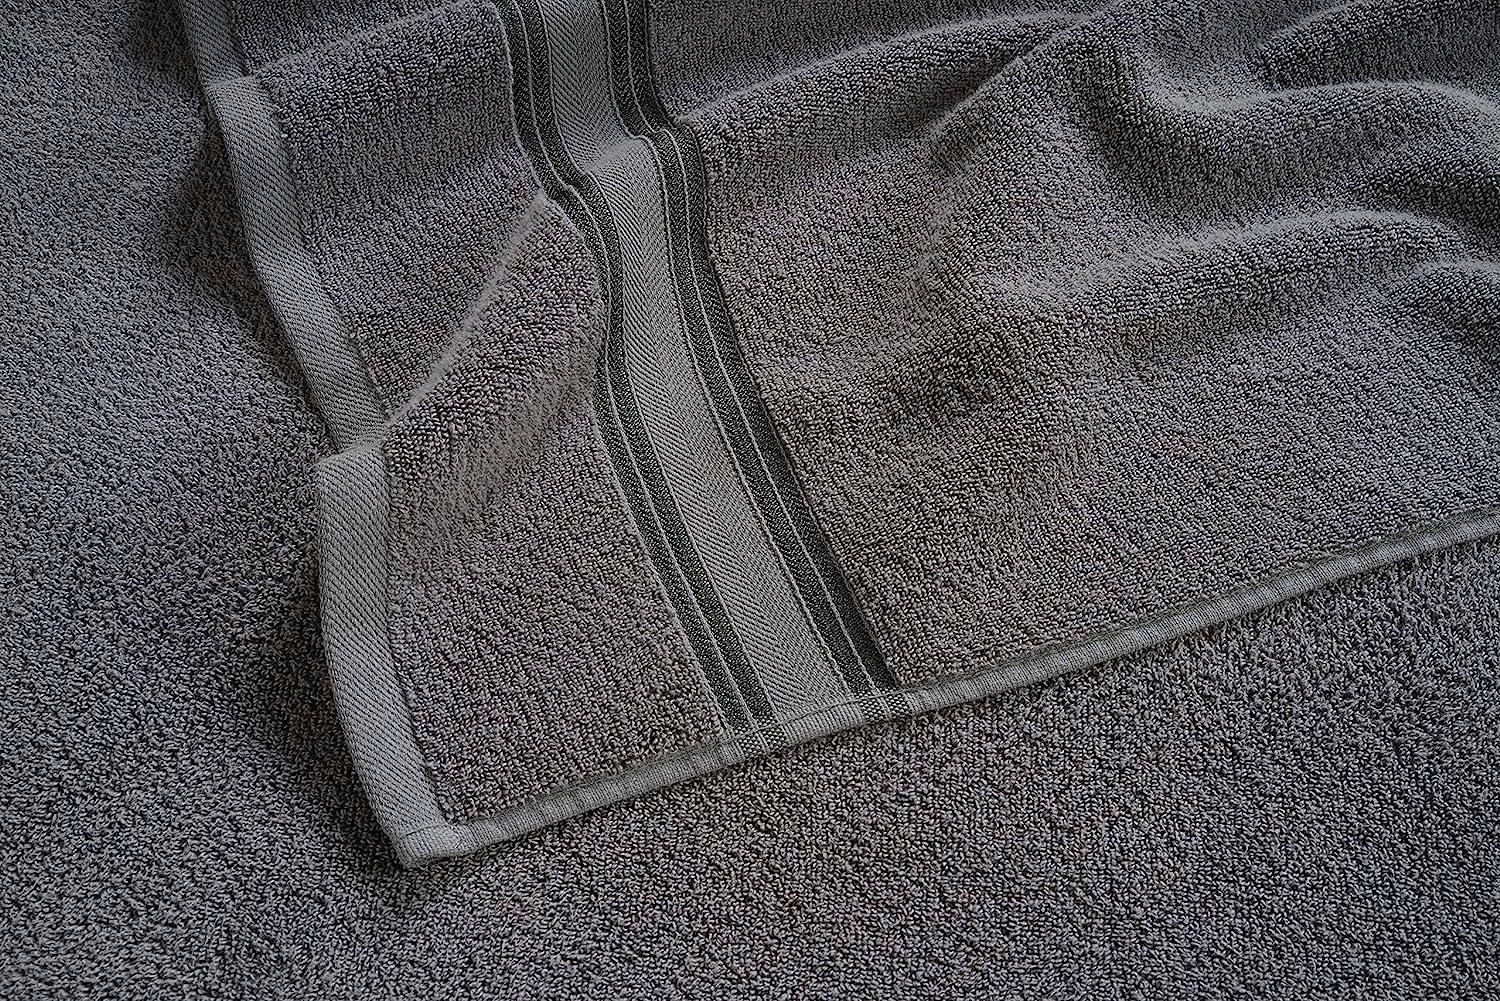 Bath Towels for Bathroom Set-18 PC 100% Cotton White LANE LINEN Soft Spa &  Hotel